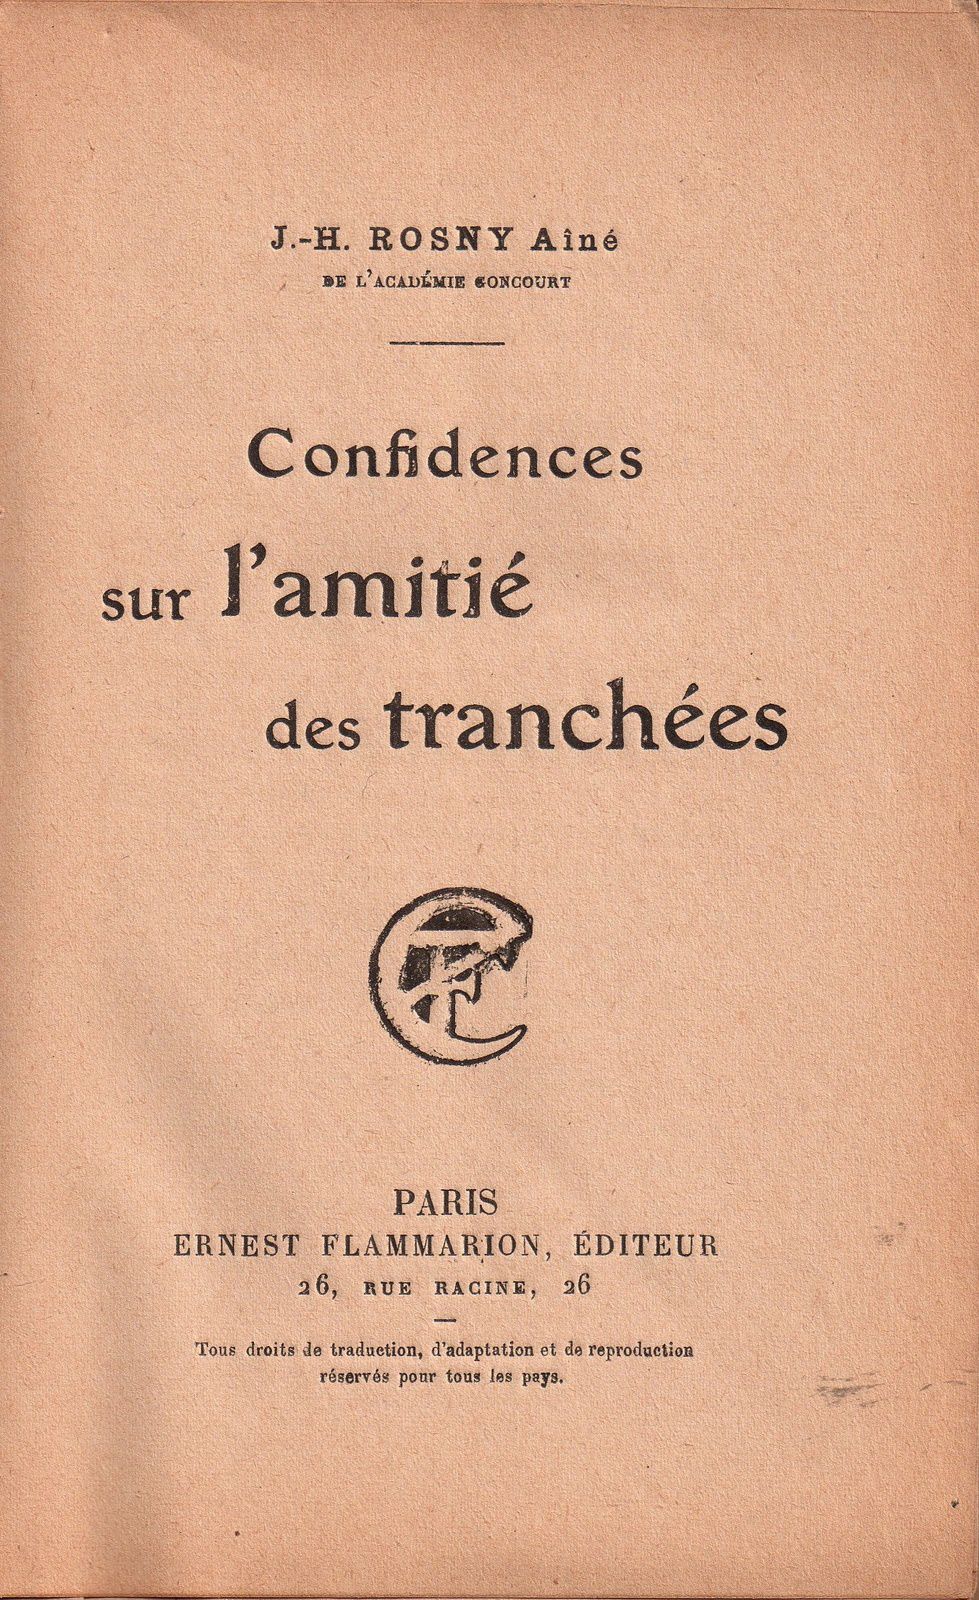 J.-H. Rosny aîné "Confidences sur l'amitié des tranchées" (Flammarion - 1918)